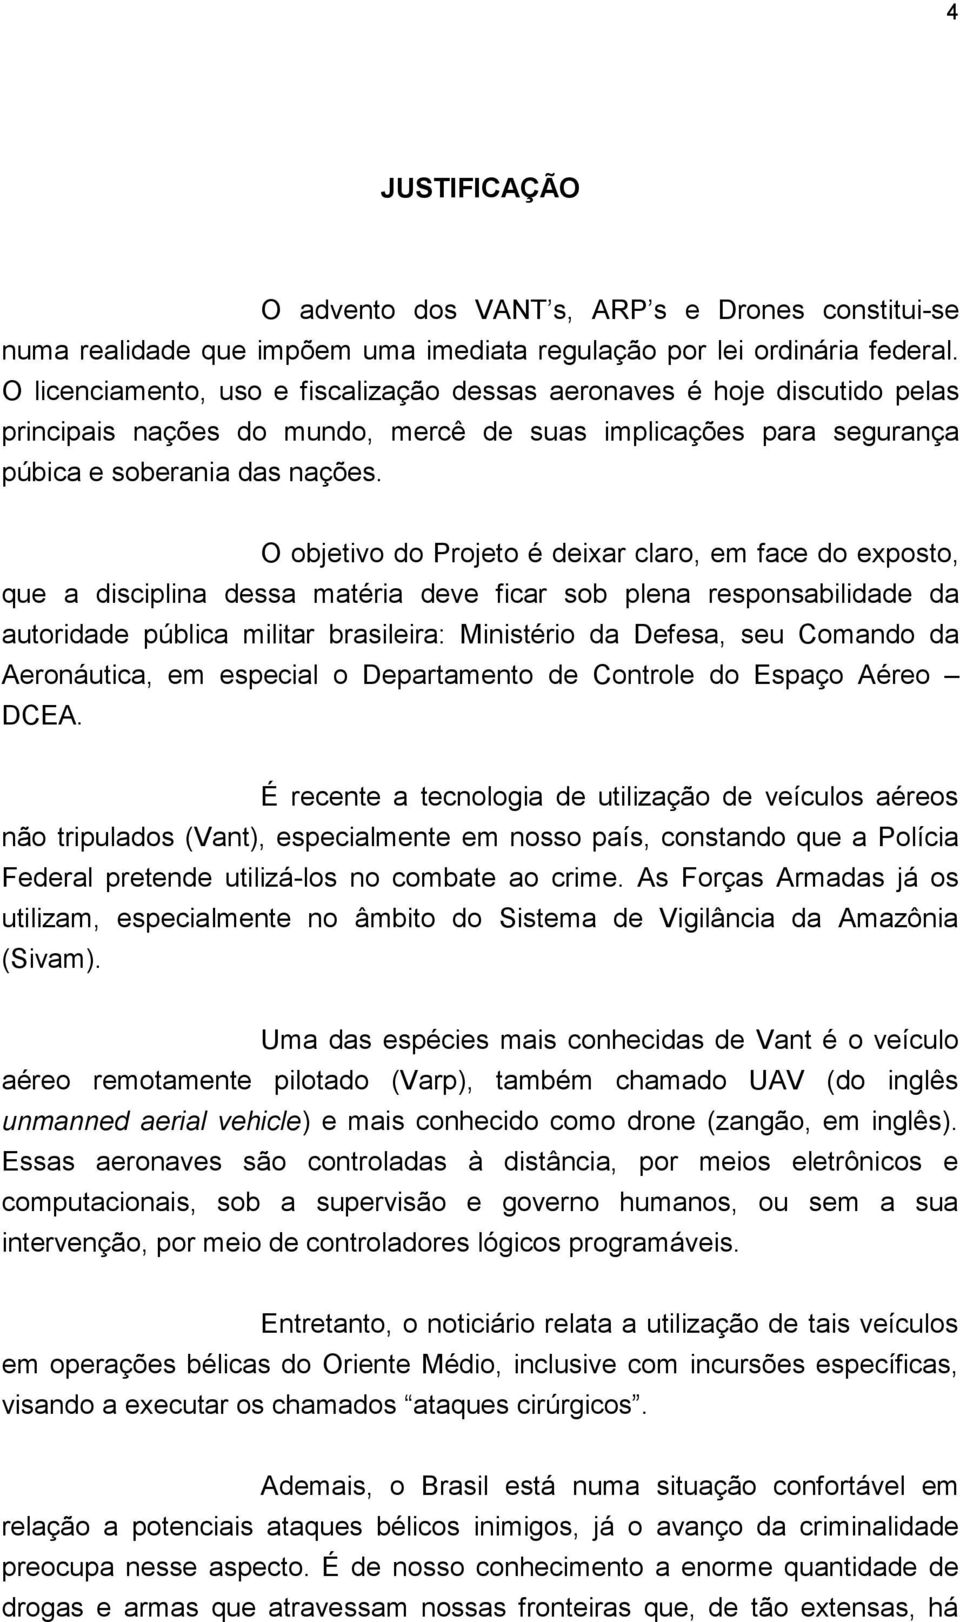 O objetivo do Projeto é deixar claro, em face do exposto, que a disciplina dessa matéria deve ficar sob plena responsabilidade da autoridade pública militar brasileira: Ministério da Defesa, seu